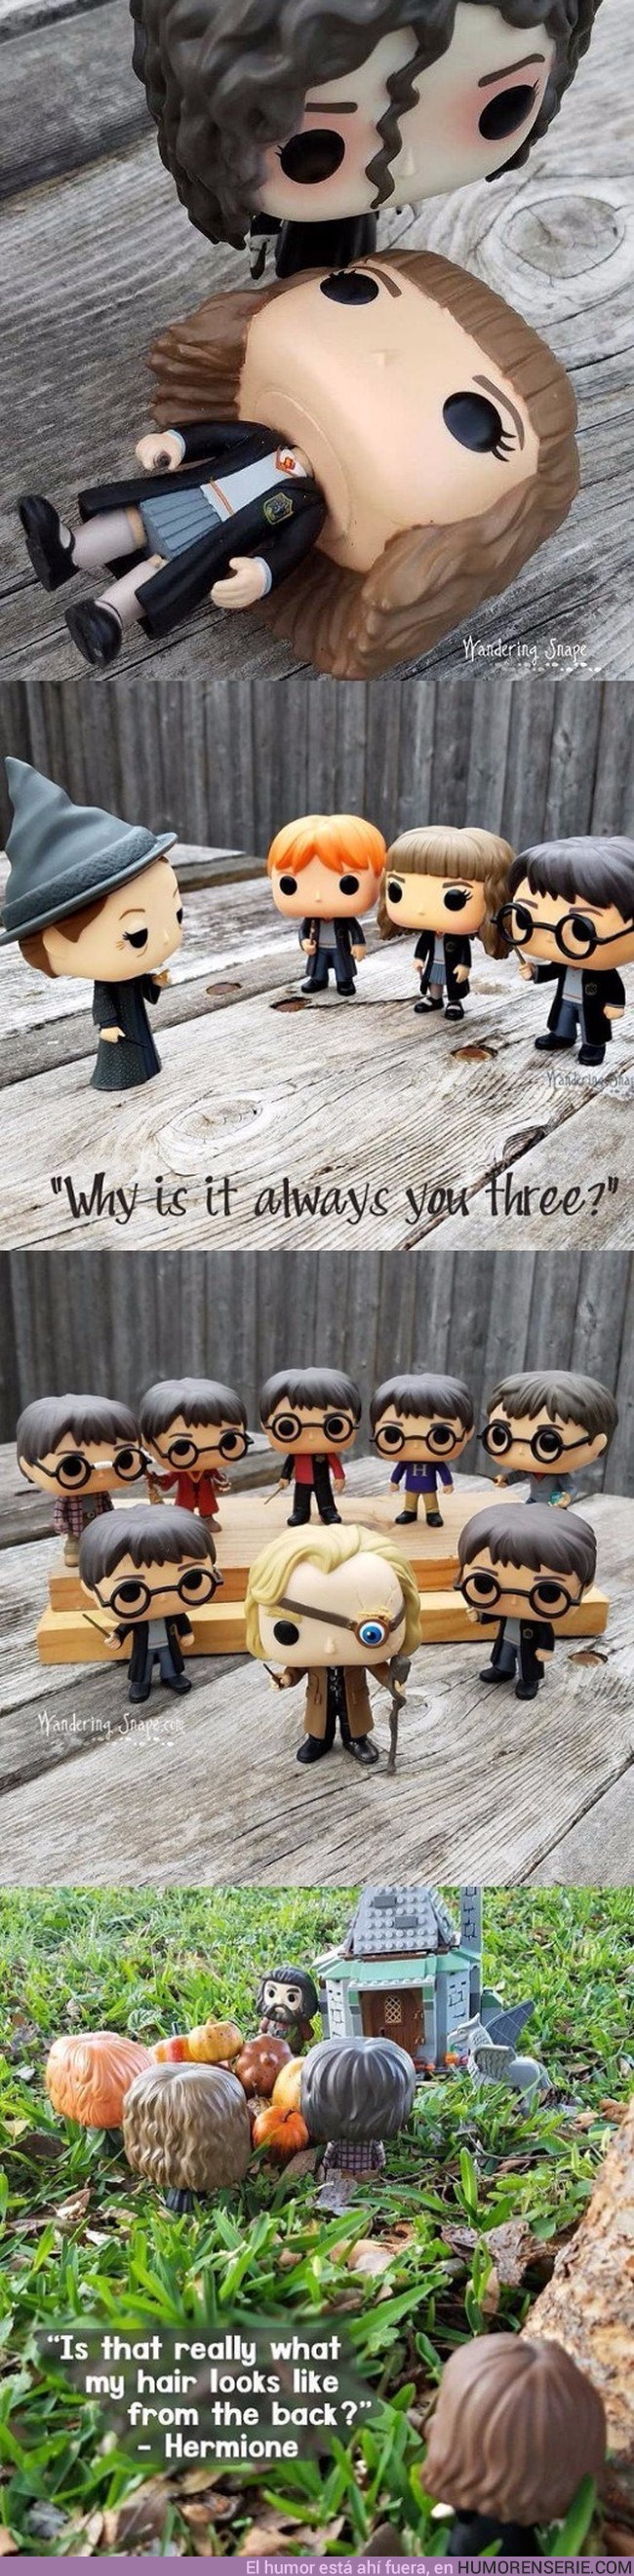 8209 - Escenas de Harry Potter recreadas con Funkos.